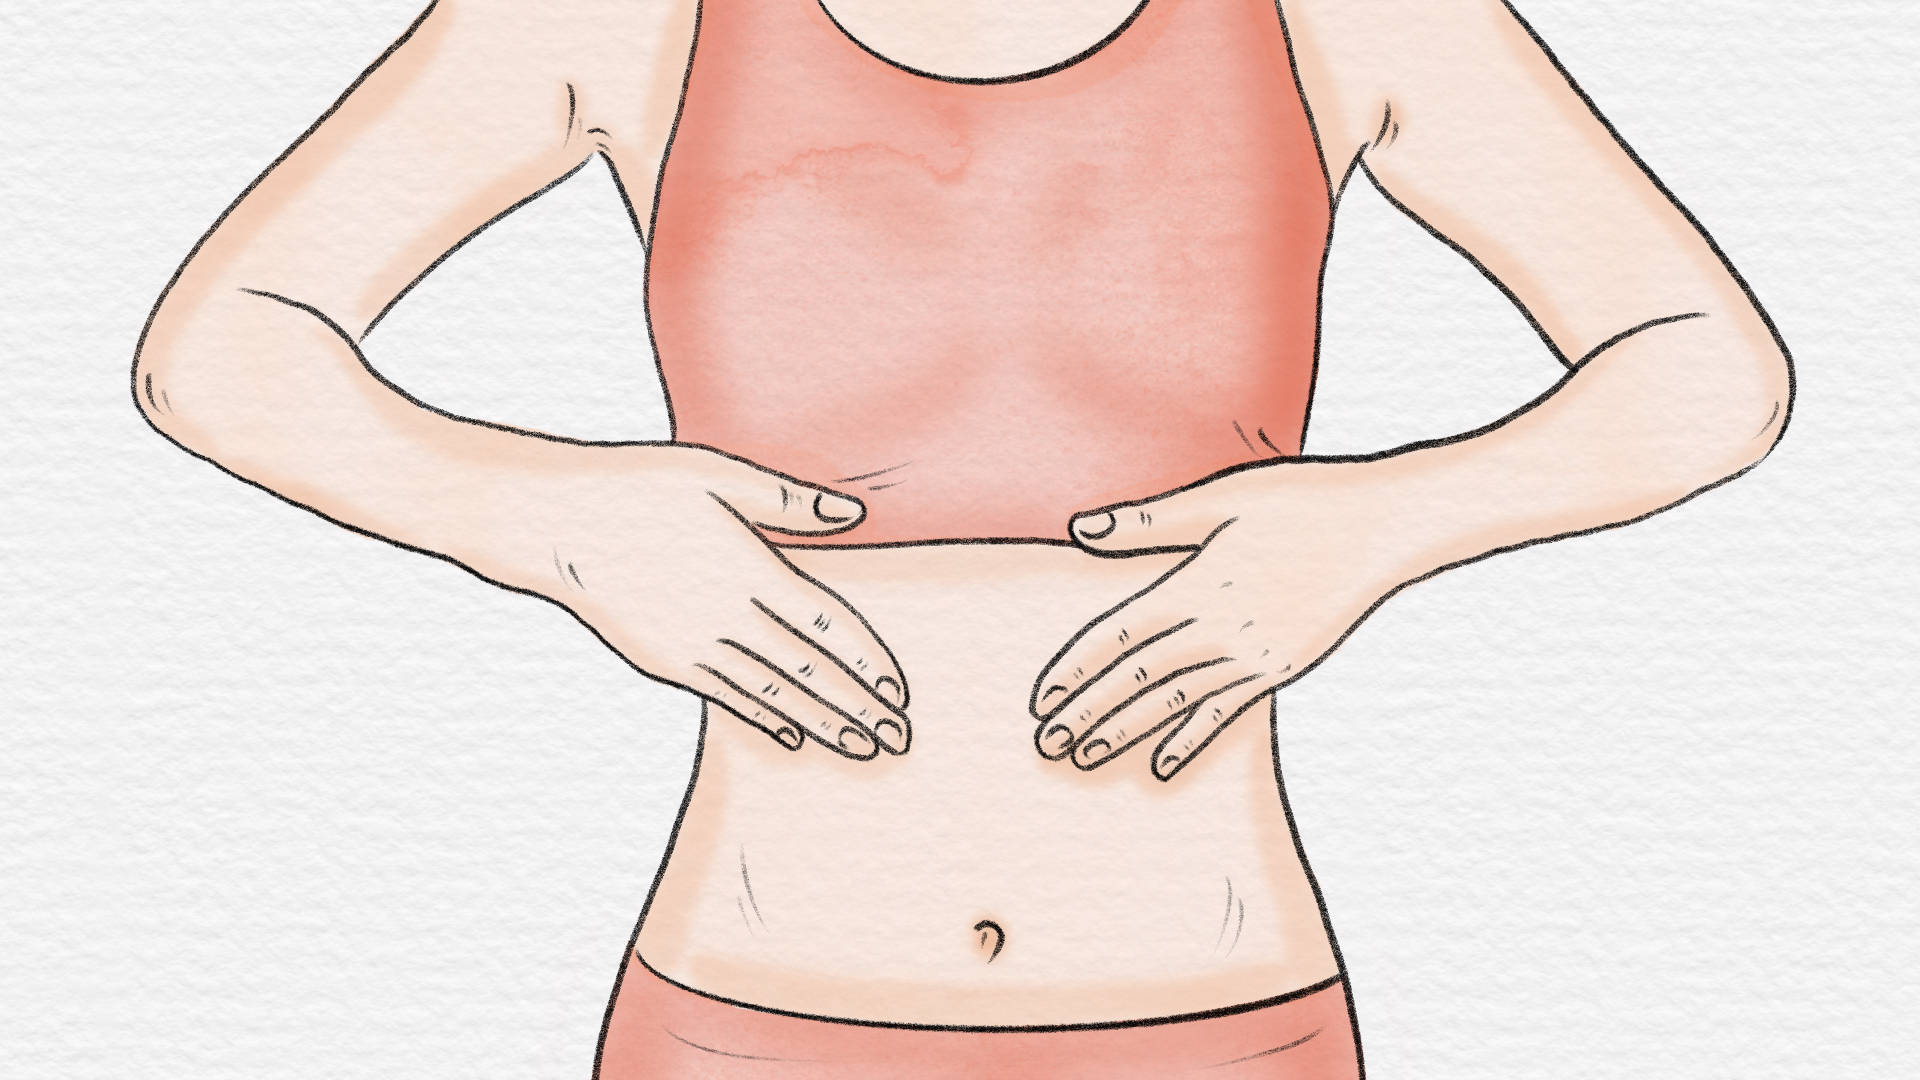 肚脐有异味儿真的是胃肠道问题吗？可以清洗吗？